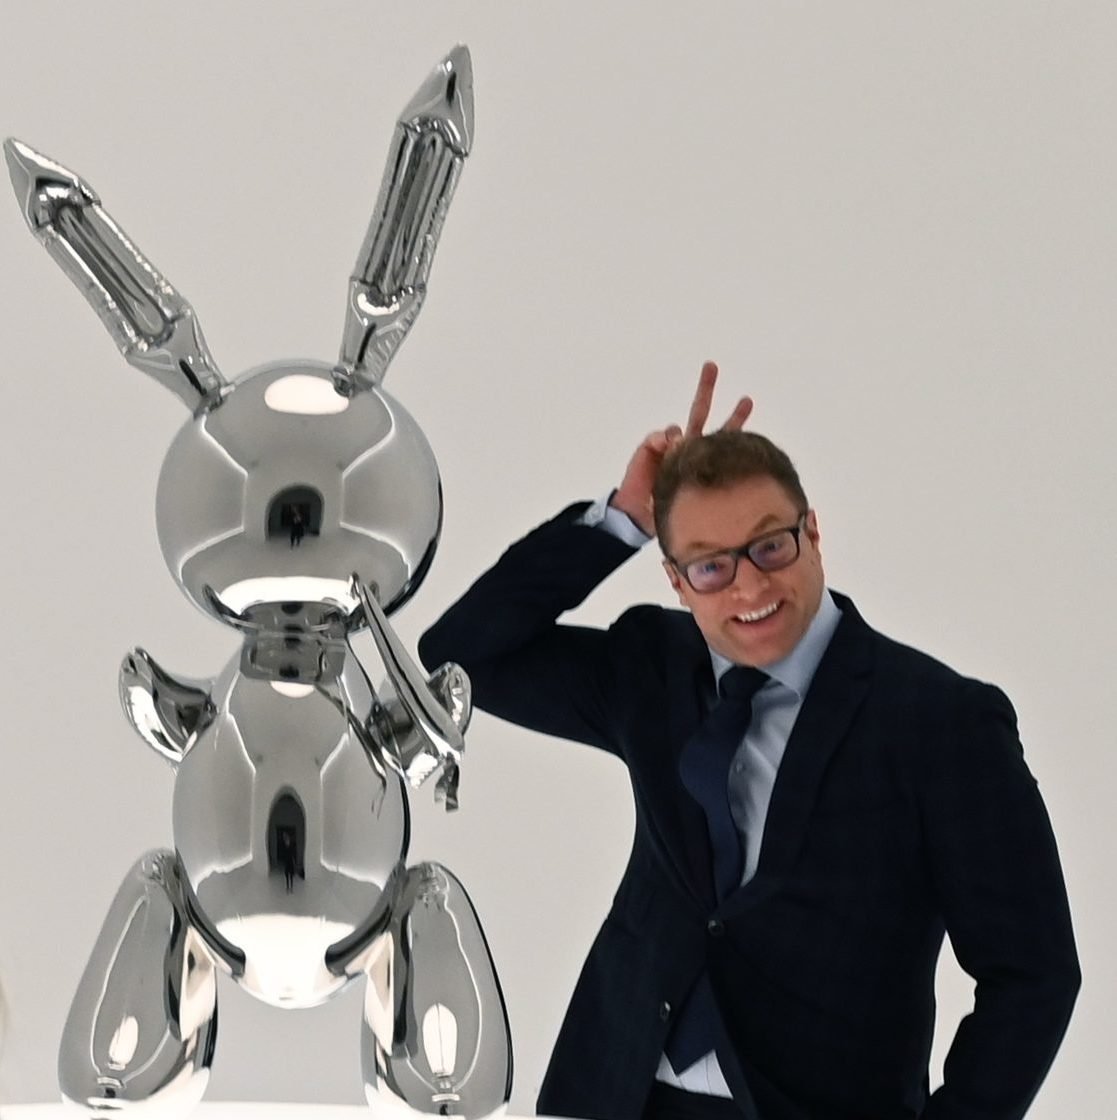 Koon's 'Rabbit' fetches record $91 million at NY auction